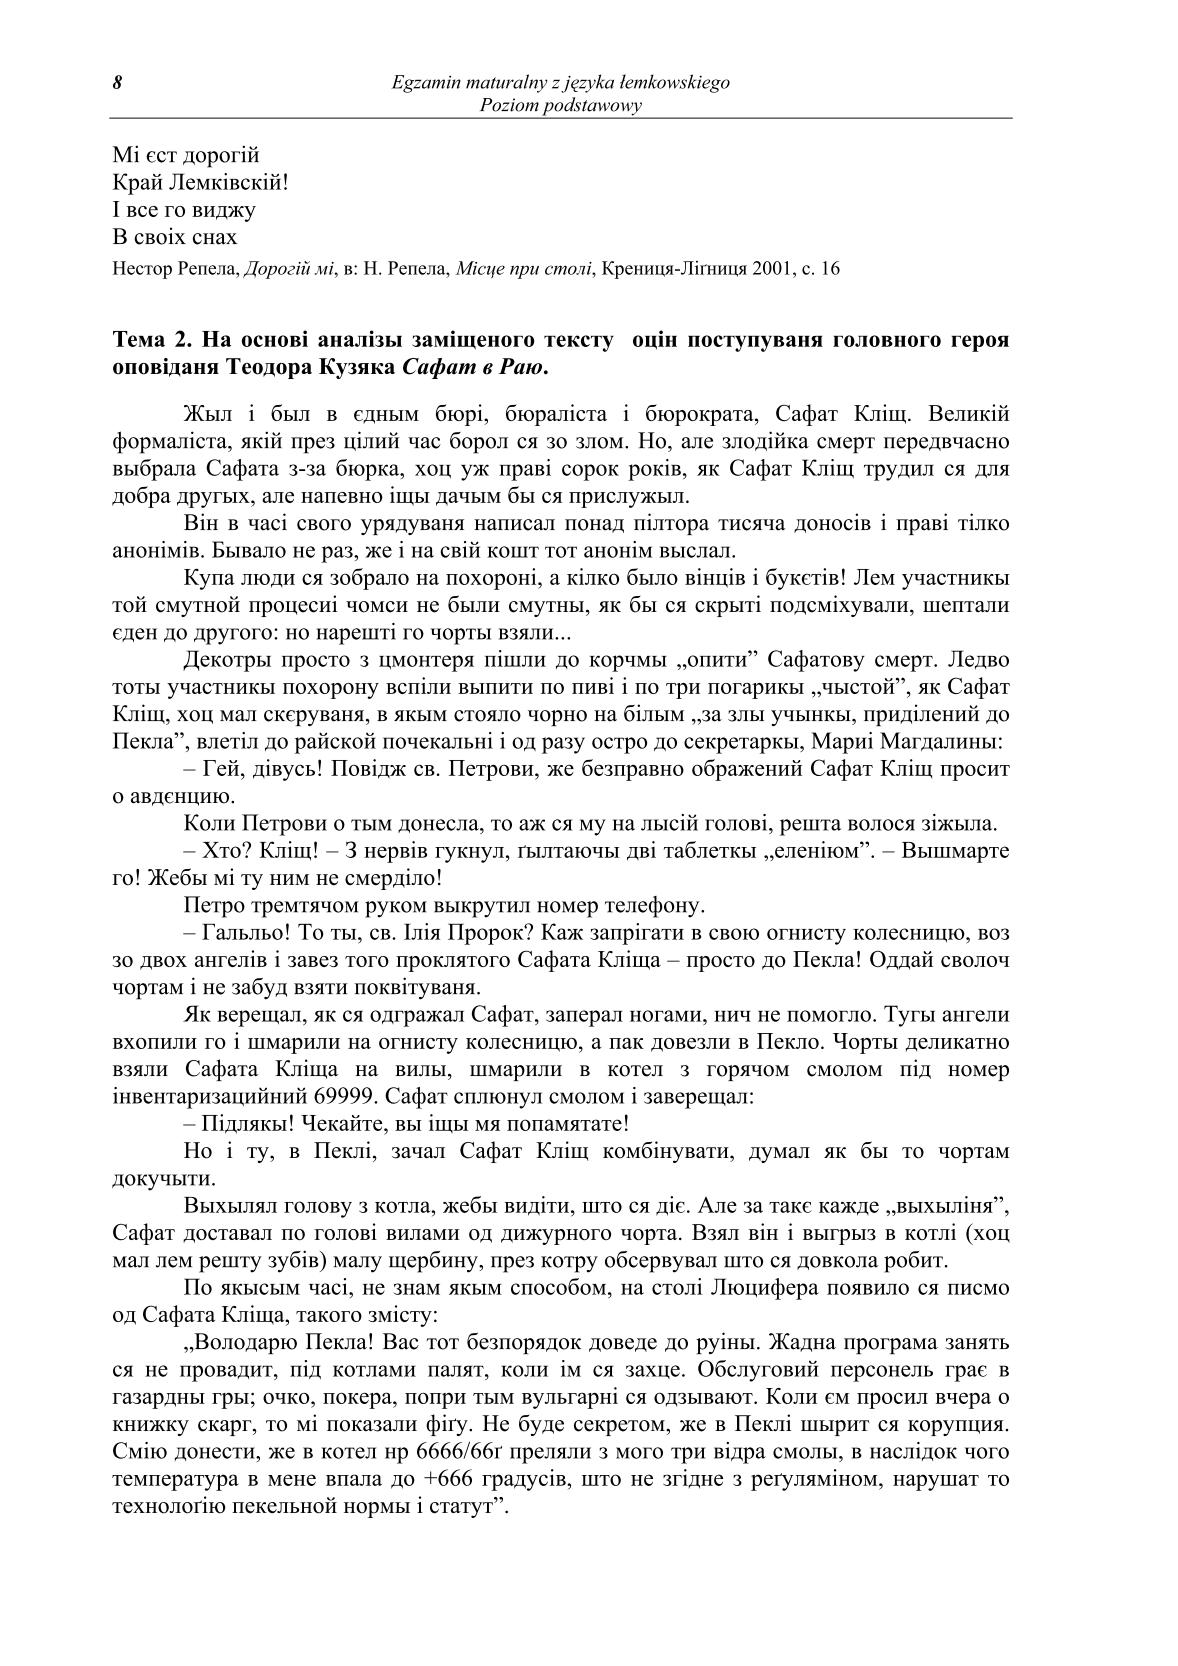 pytania-jezyk-lemkowski-poziom-podstawowy-matura-2014-str.8